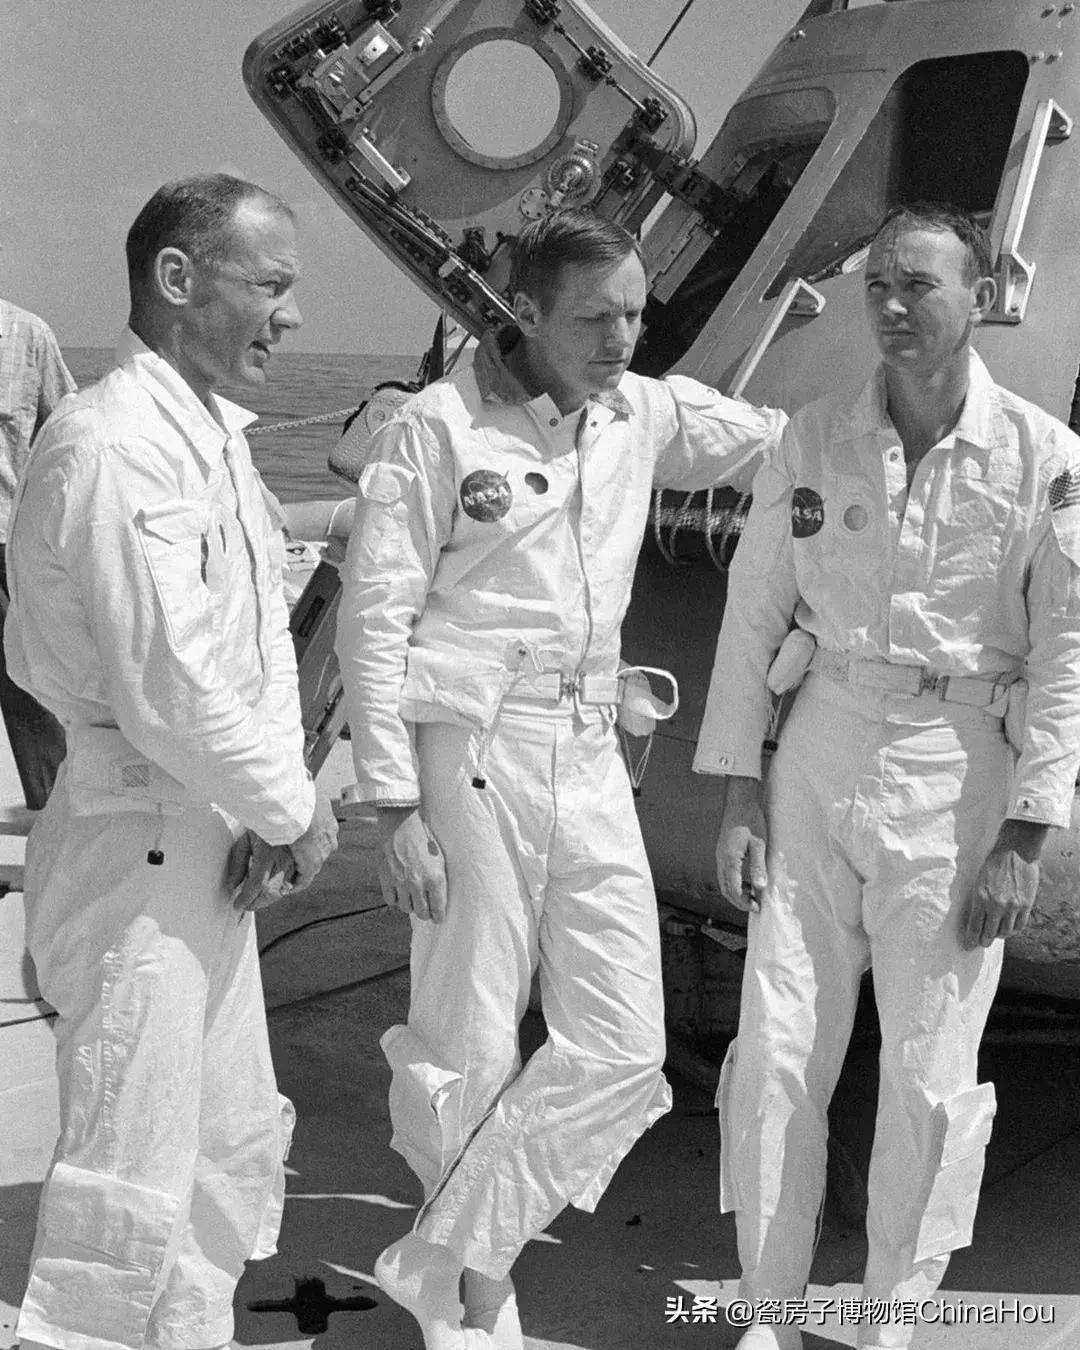 关于阿姆斯特朗的资料载人登陆月球的飞船是嫦娥几号